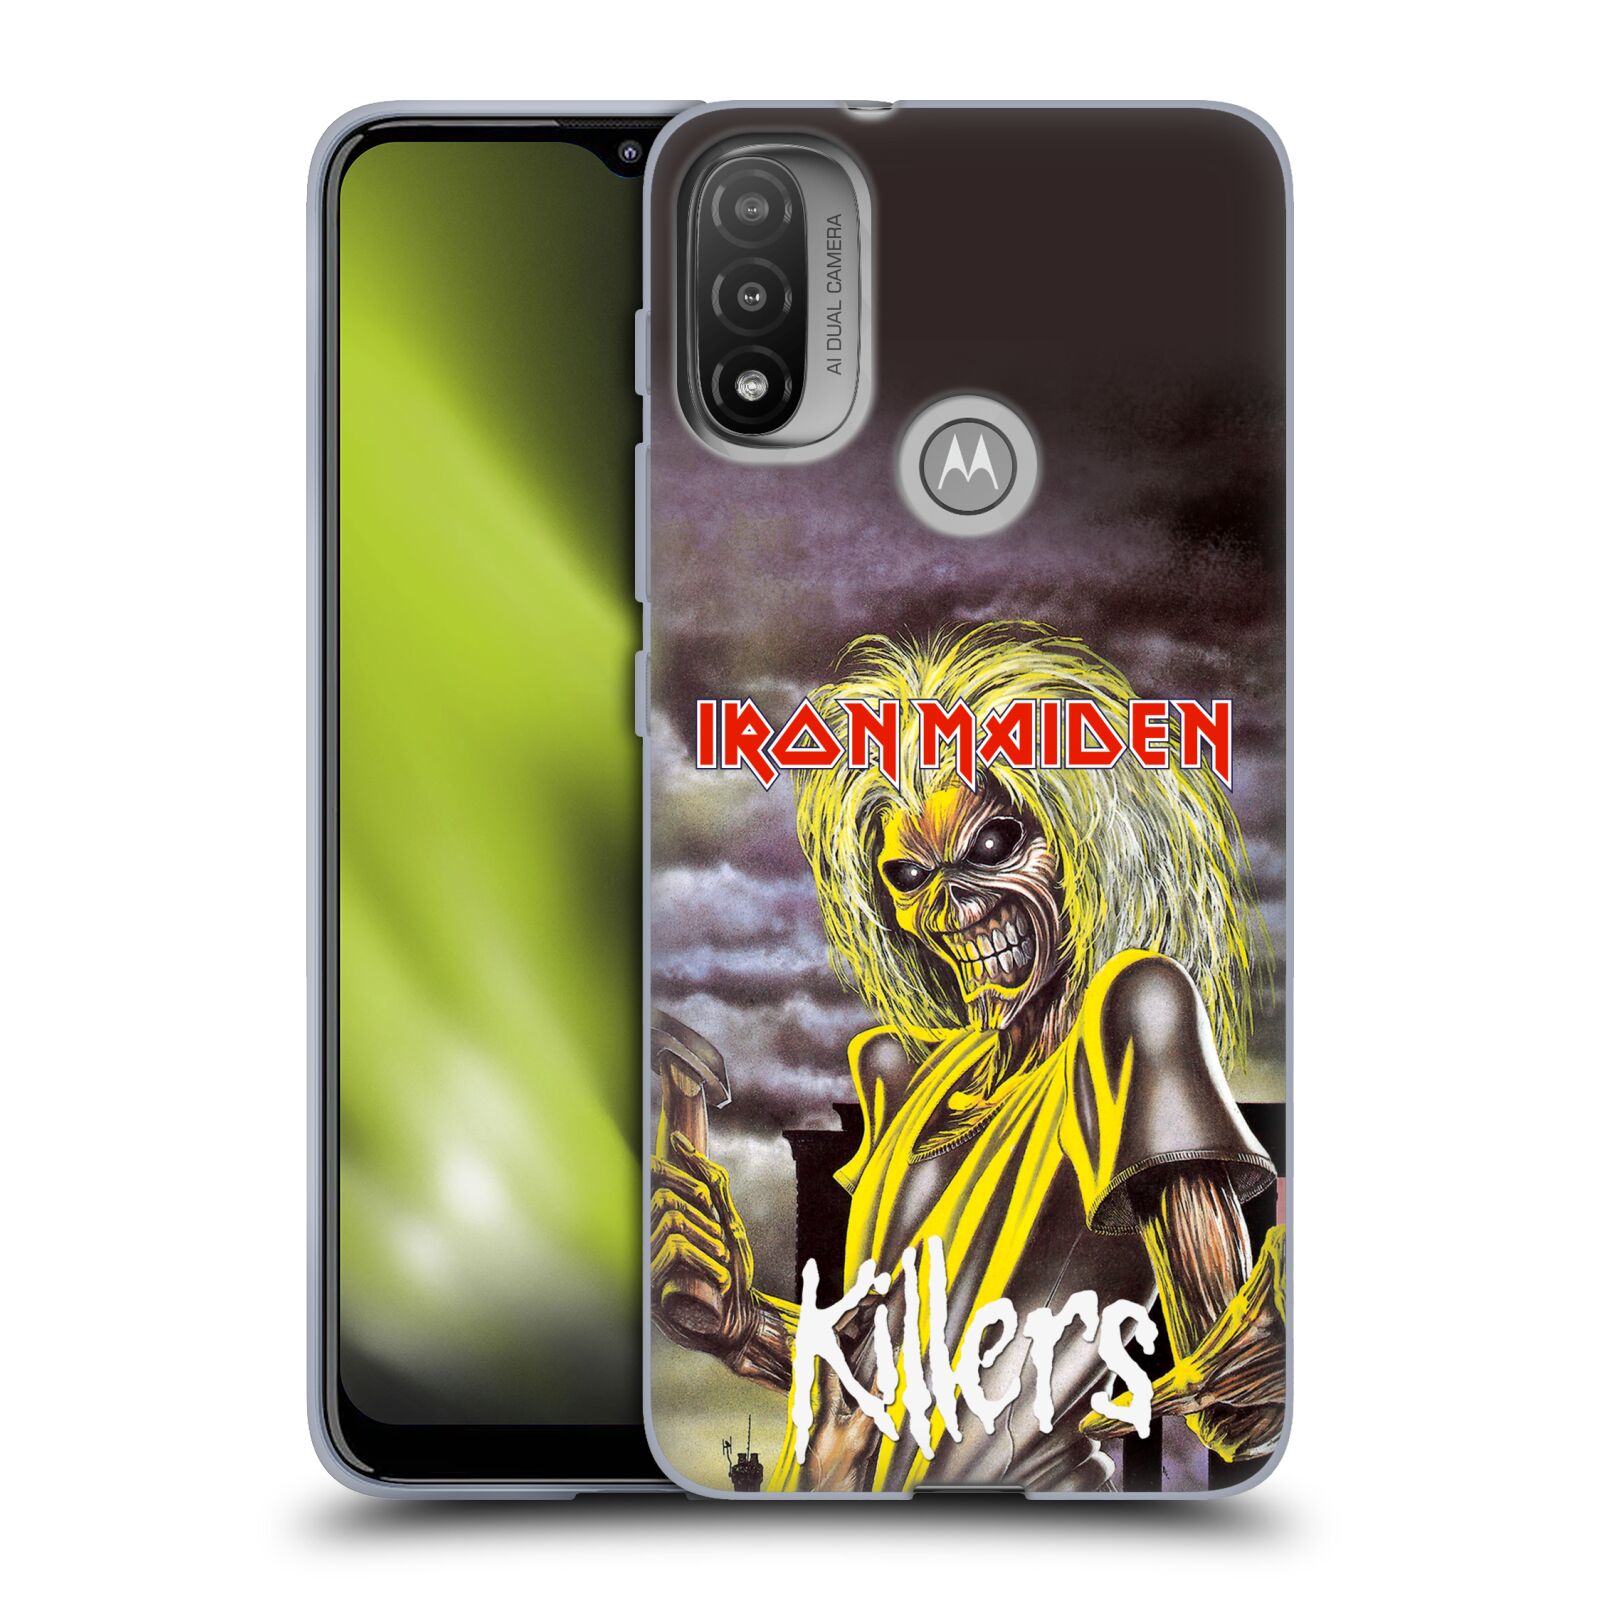 Silikonové pouzdro na mobil Motorola Moto E20 - Head Case - Iron Maiden - Killers